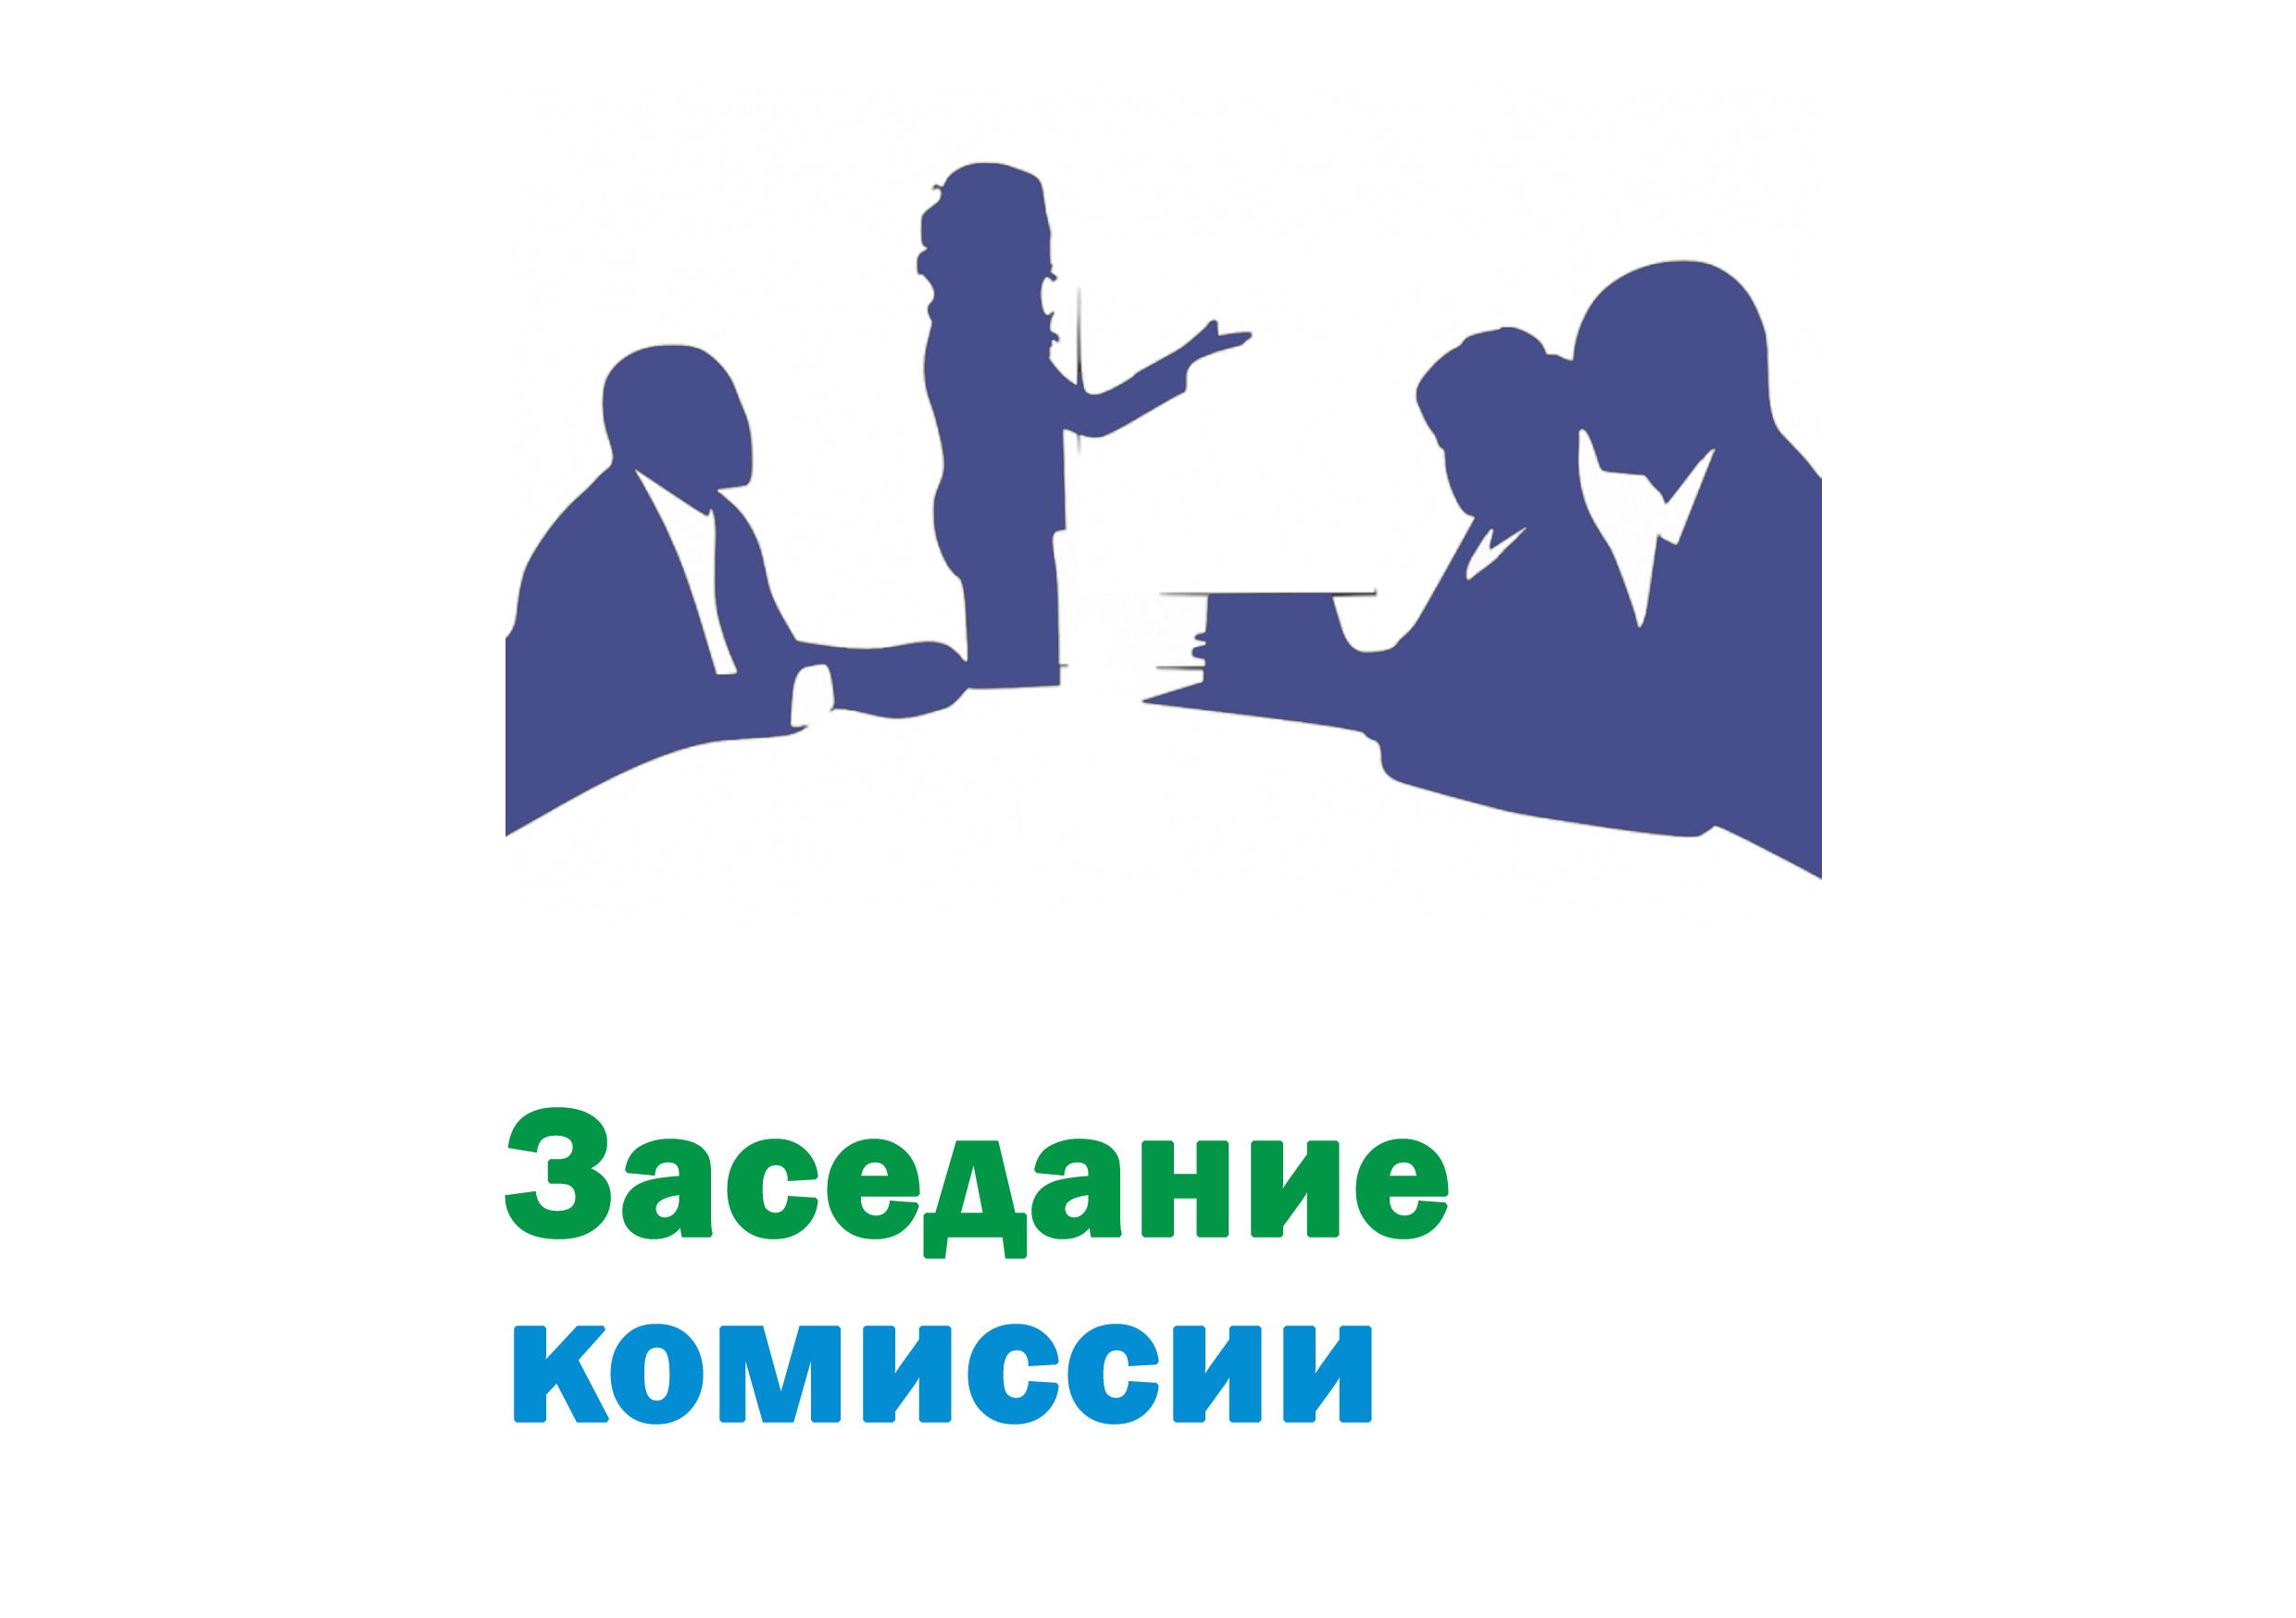 Заседание комиссии по вопросам реализации ФЗ от 31.07.2020 № 248-ФЗ  &amp;quot;О государственном контроле и муниципальном контроле в РФ&amp;quot;.